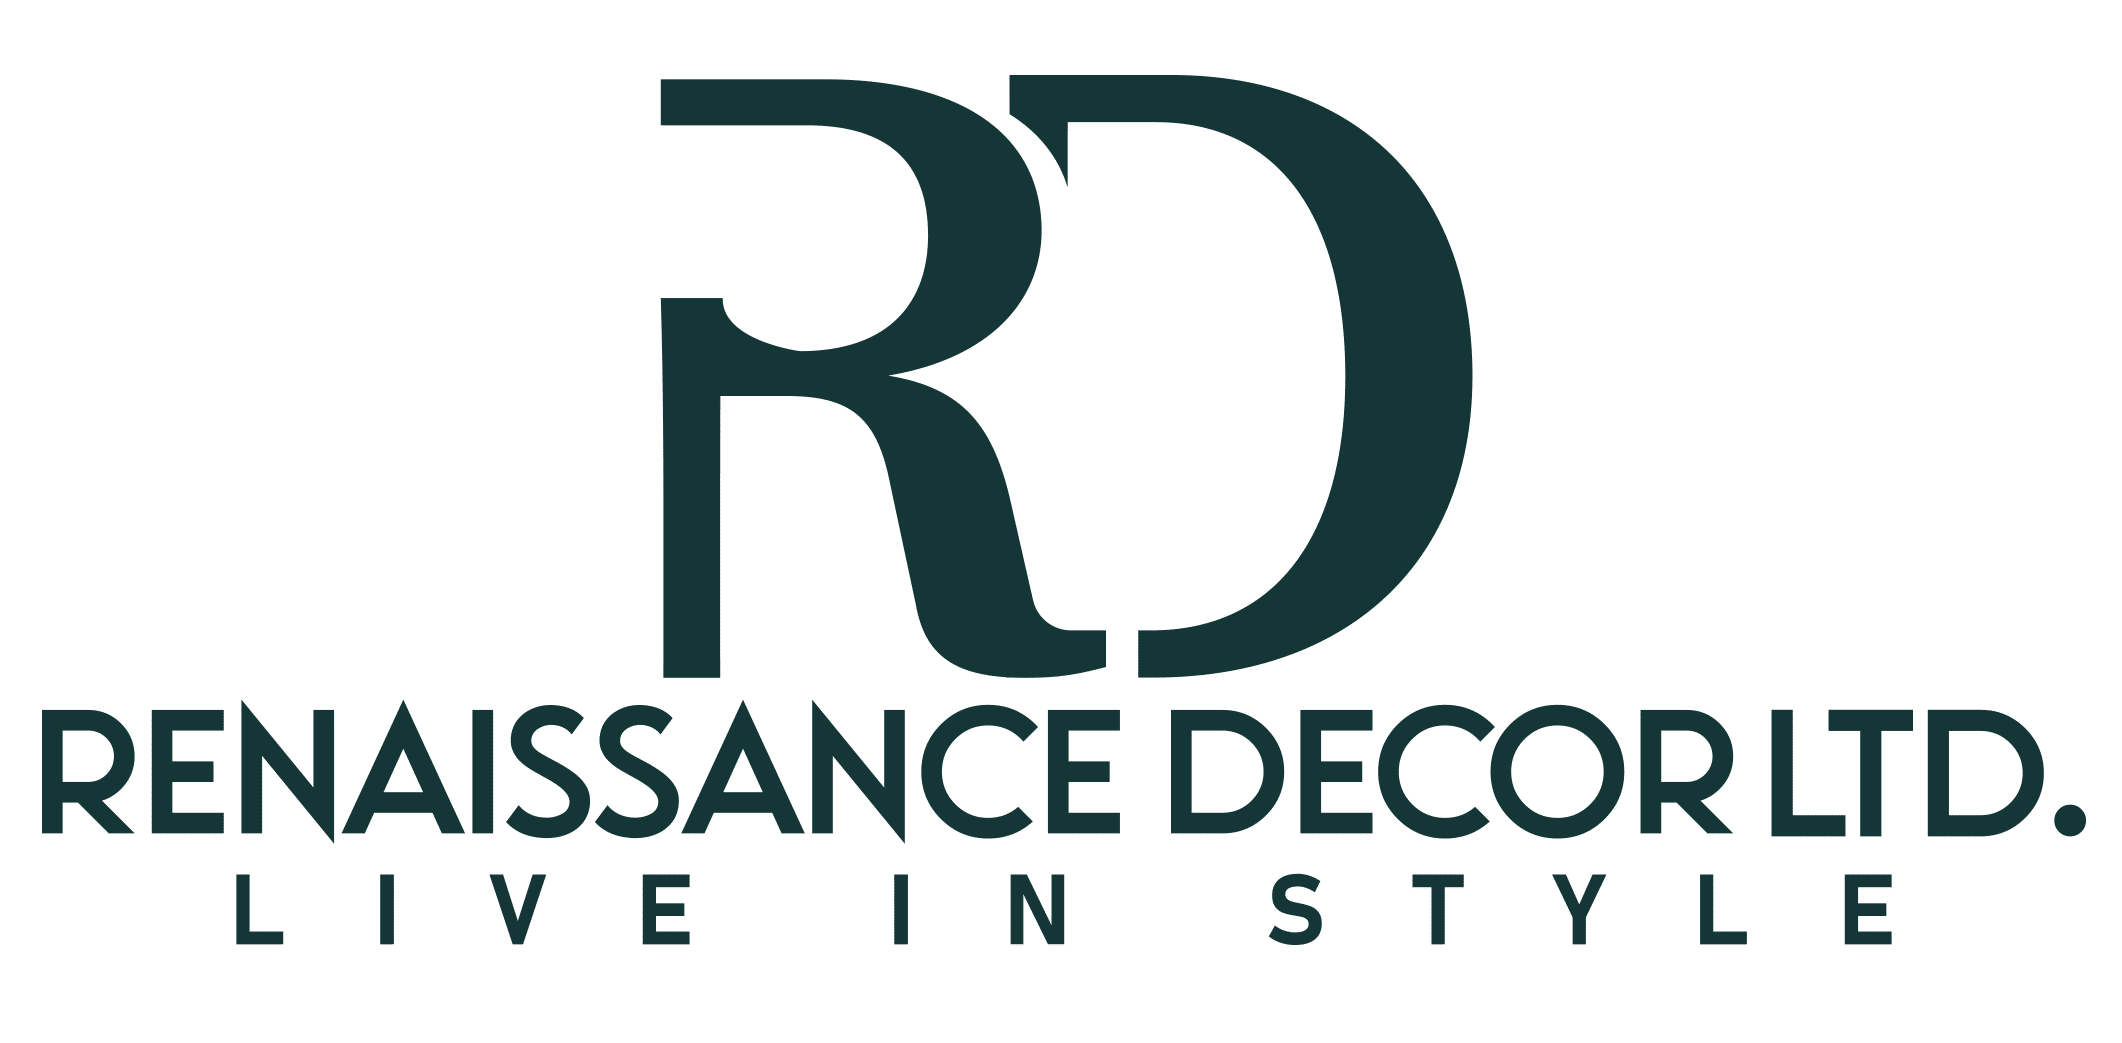 Renaissance Decor Ltd logo